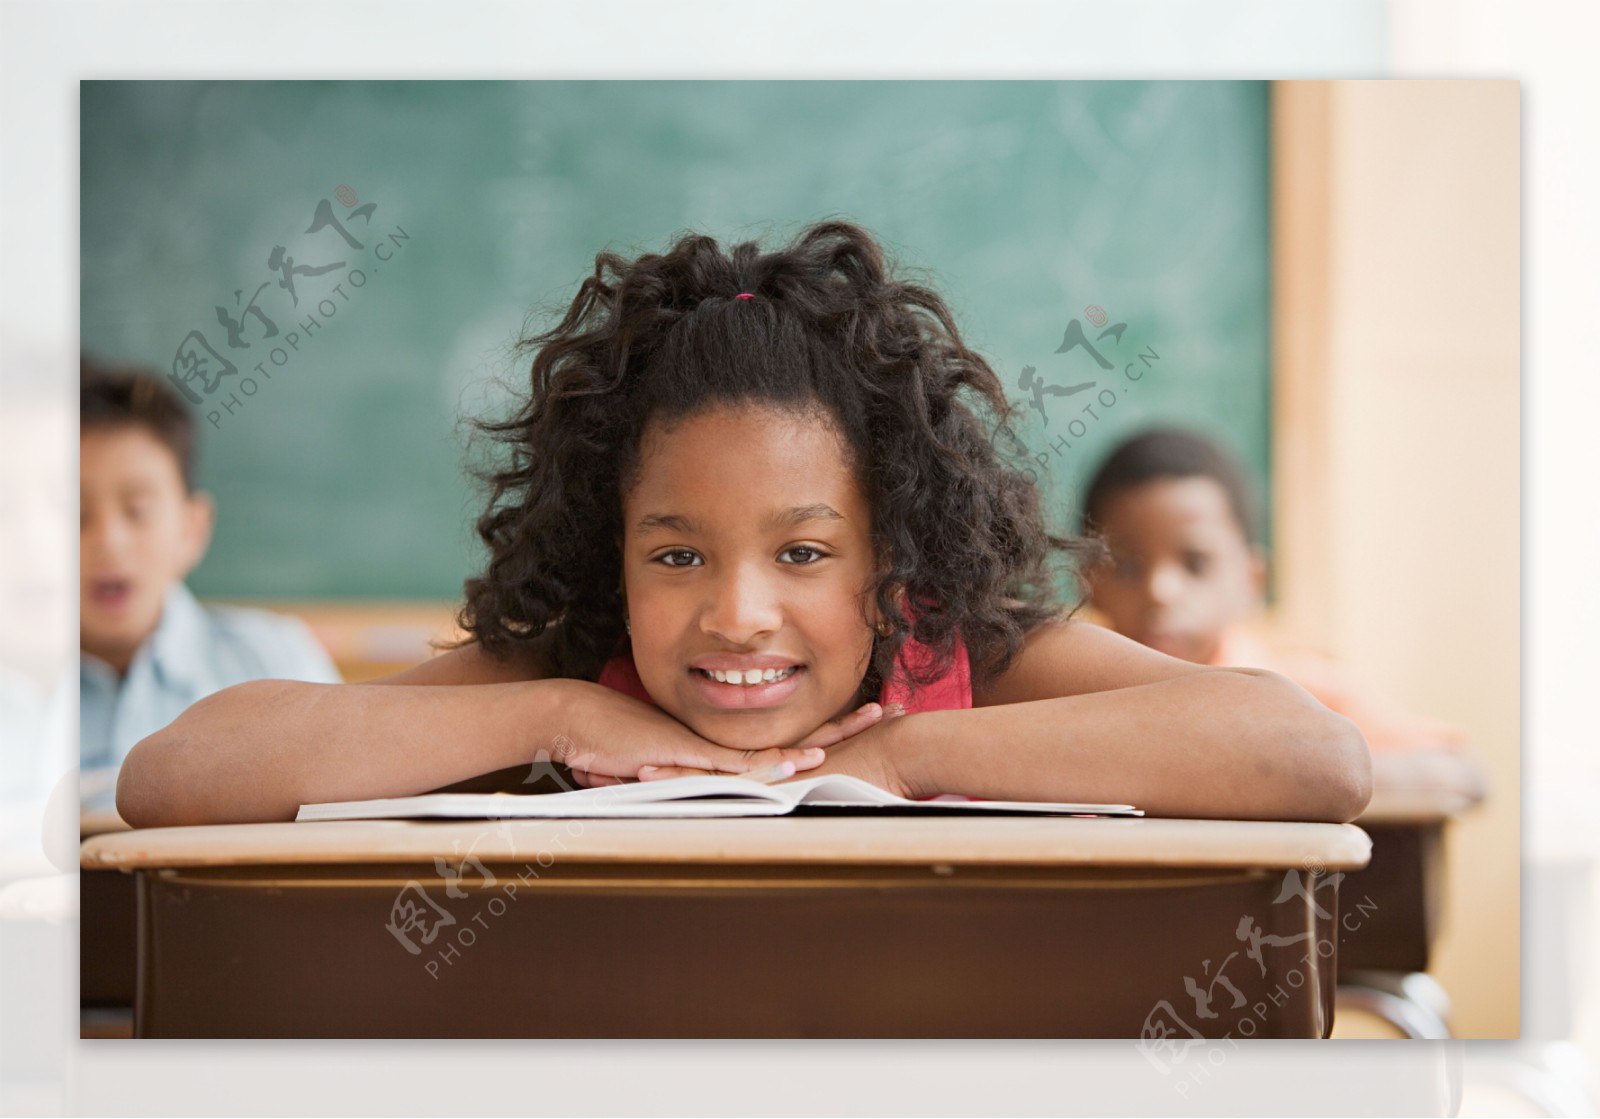 教室里趴在课桌上微笑的小学生图片